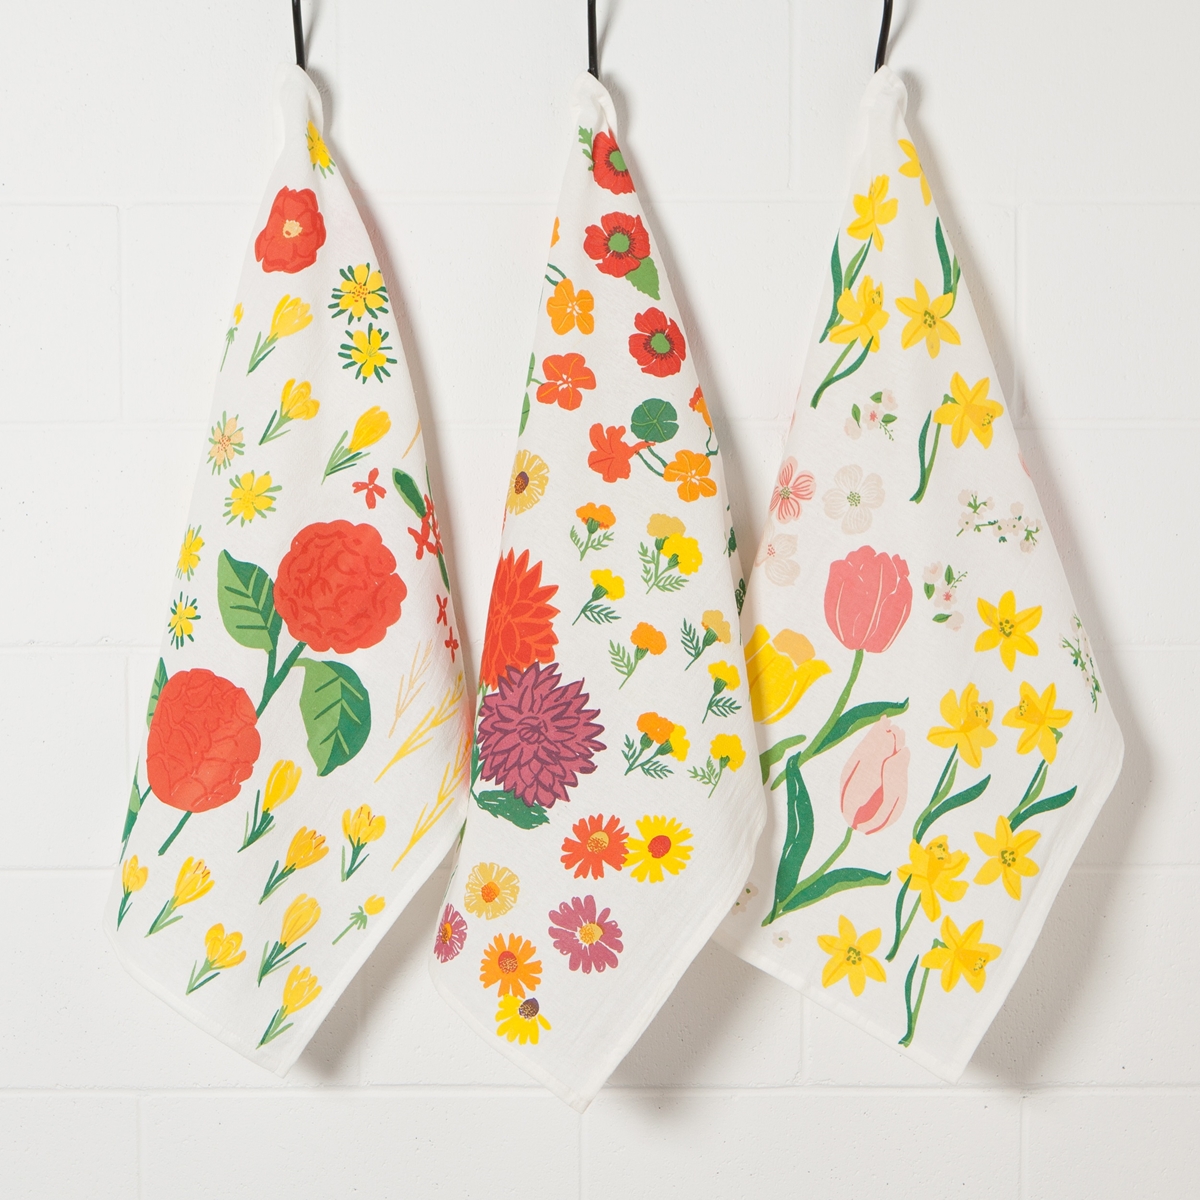 Floral Flour Sack Towel Set